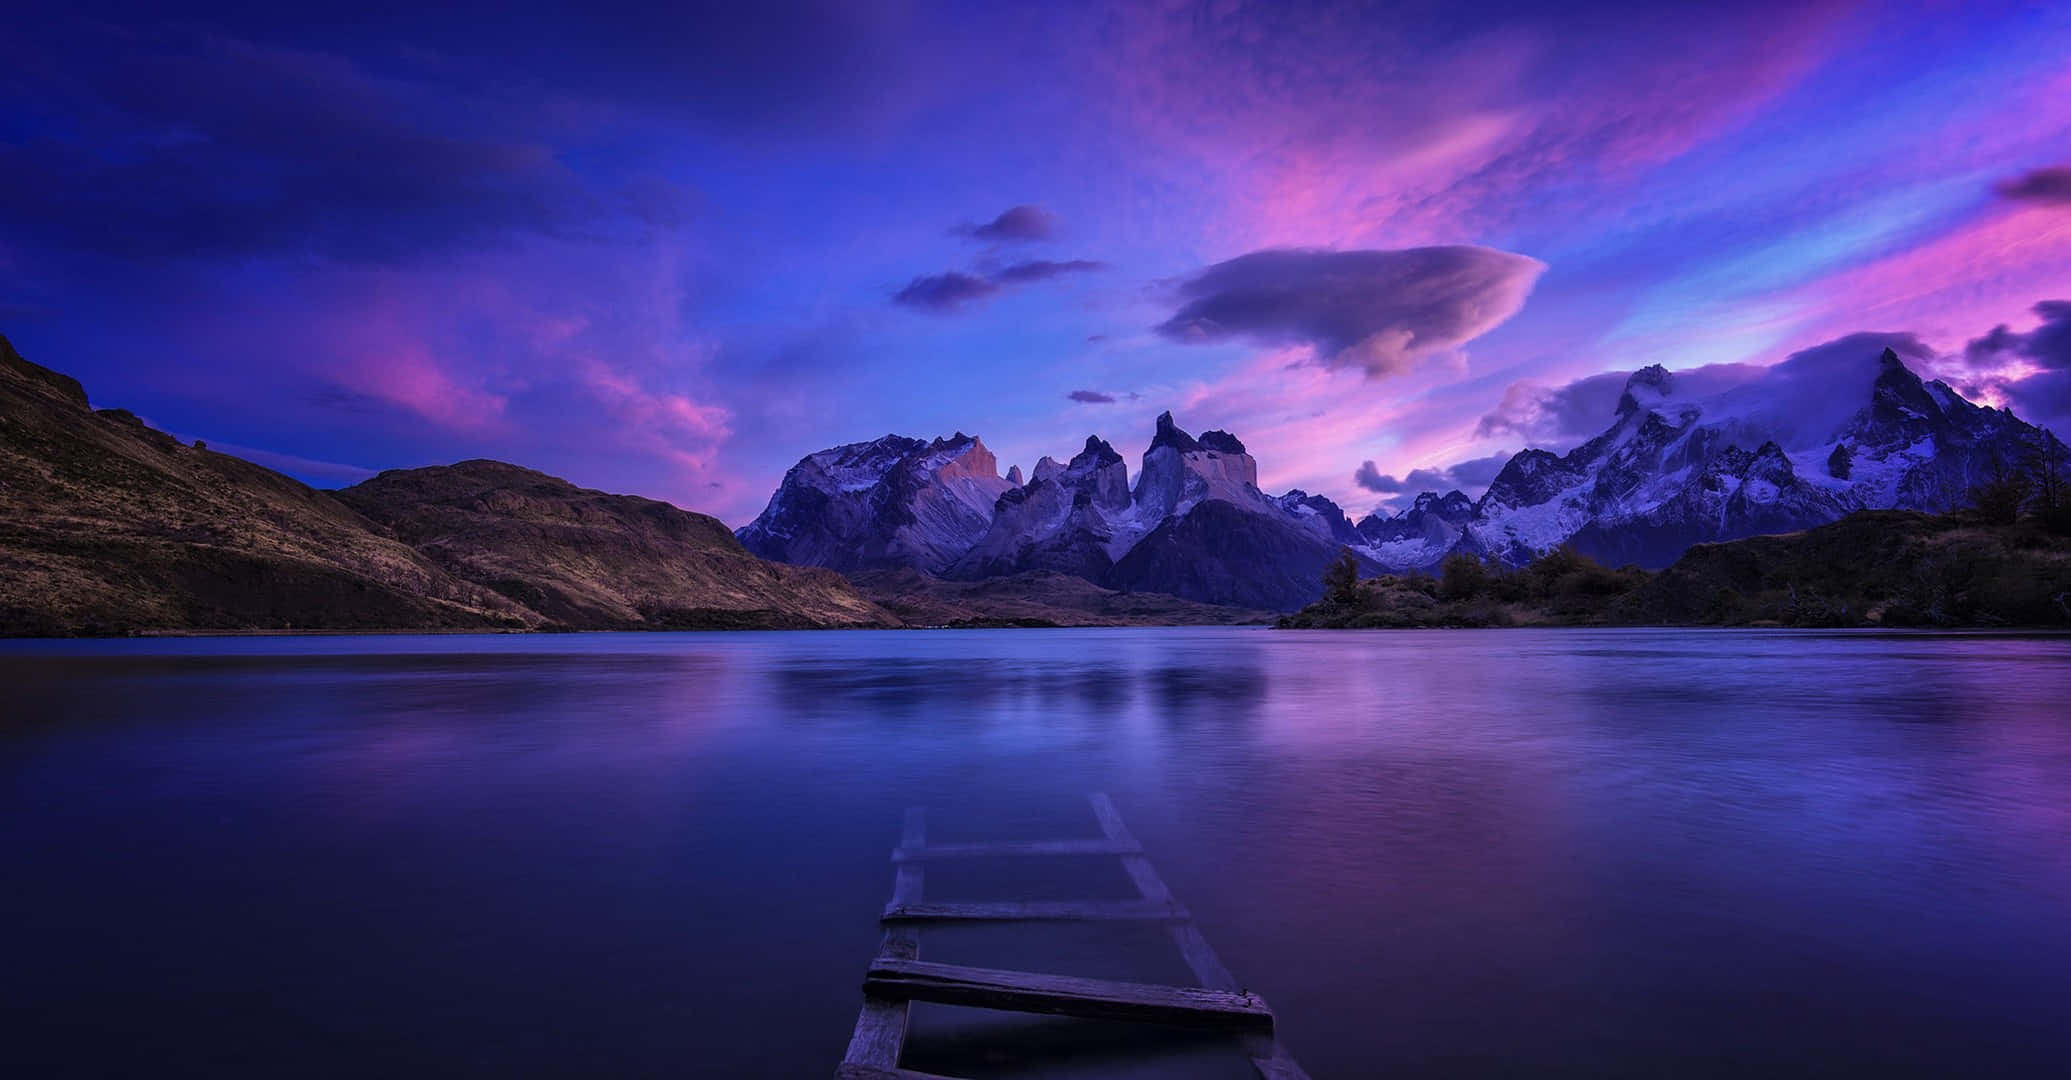 Billedemagisk Scene Fra Patagonien.